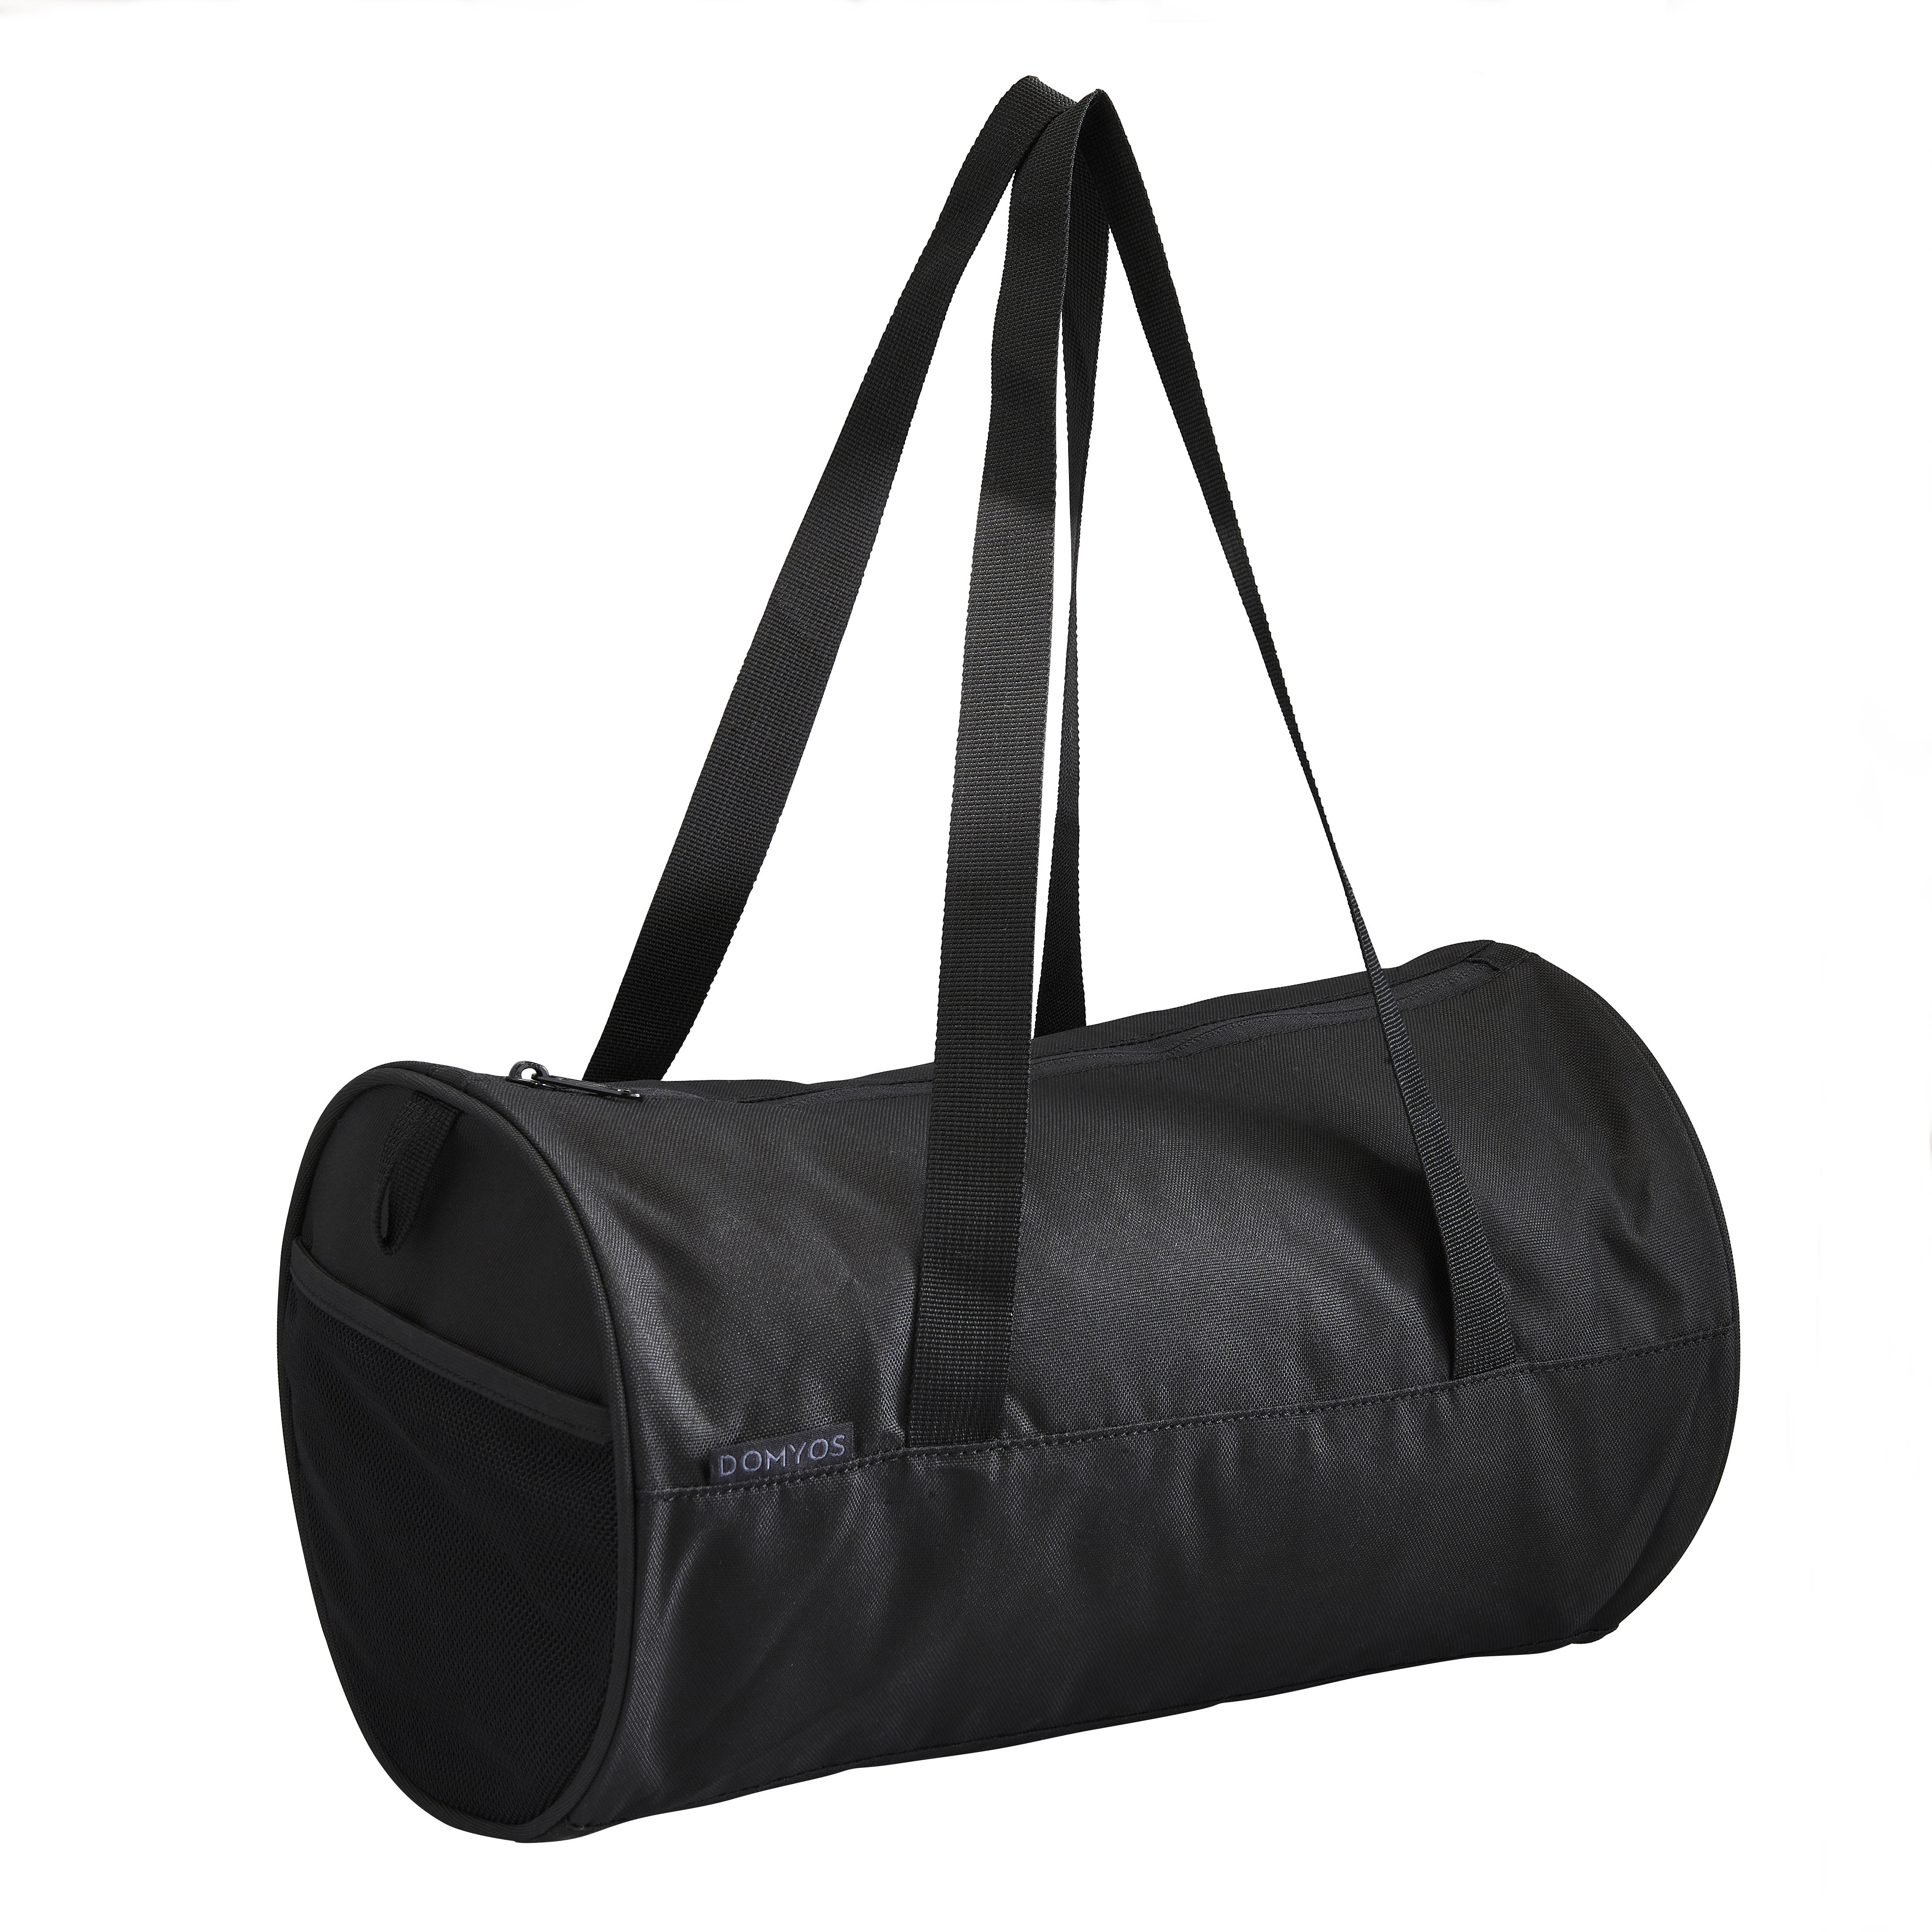 UCB Gym Duffel Bag | Stylish Gym Bag